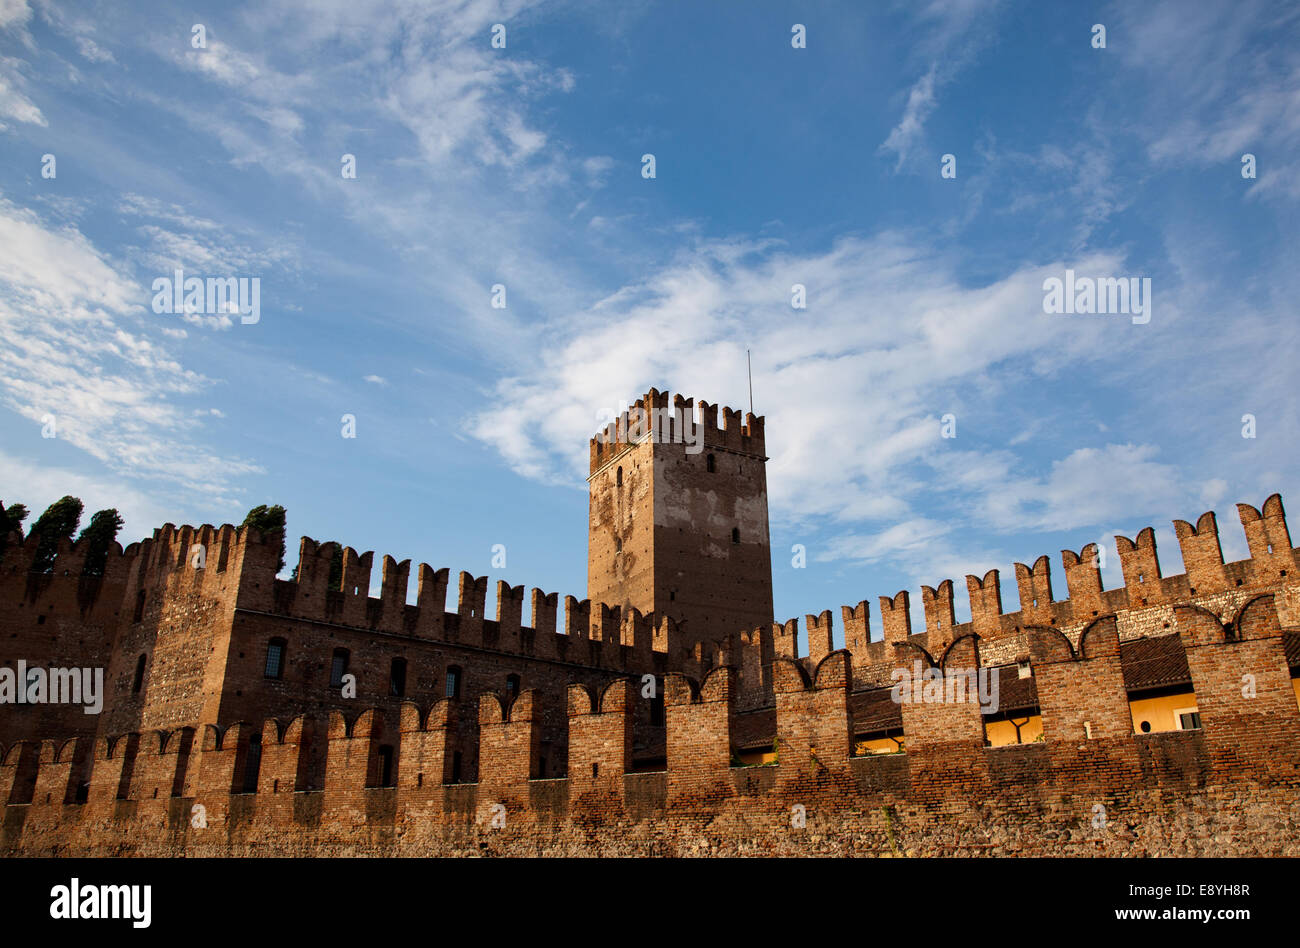 Castel Vecchio battlements Stock Photo